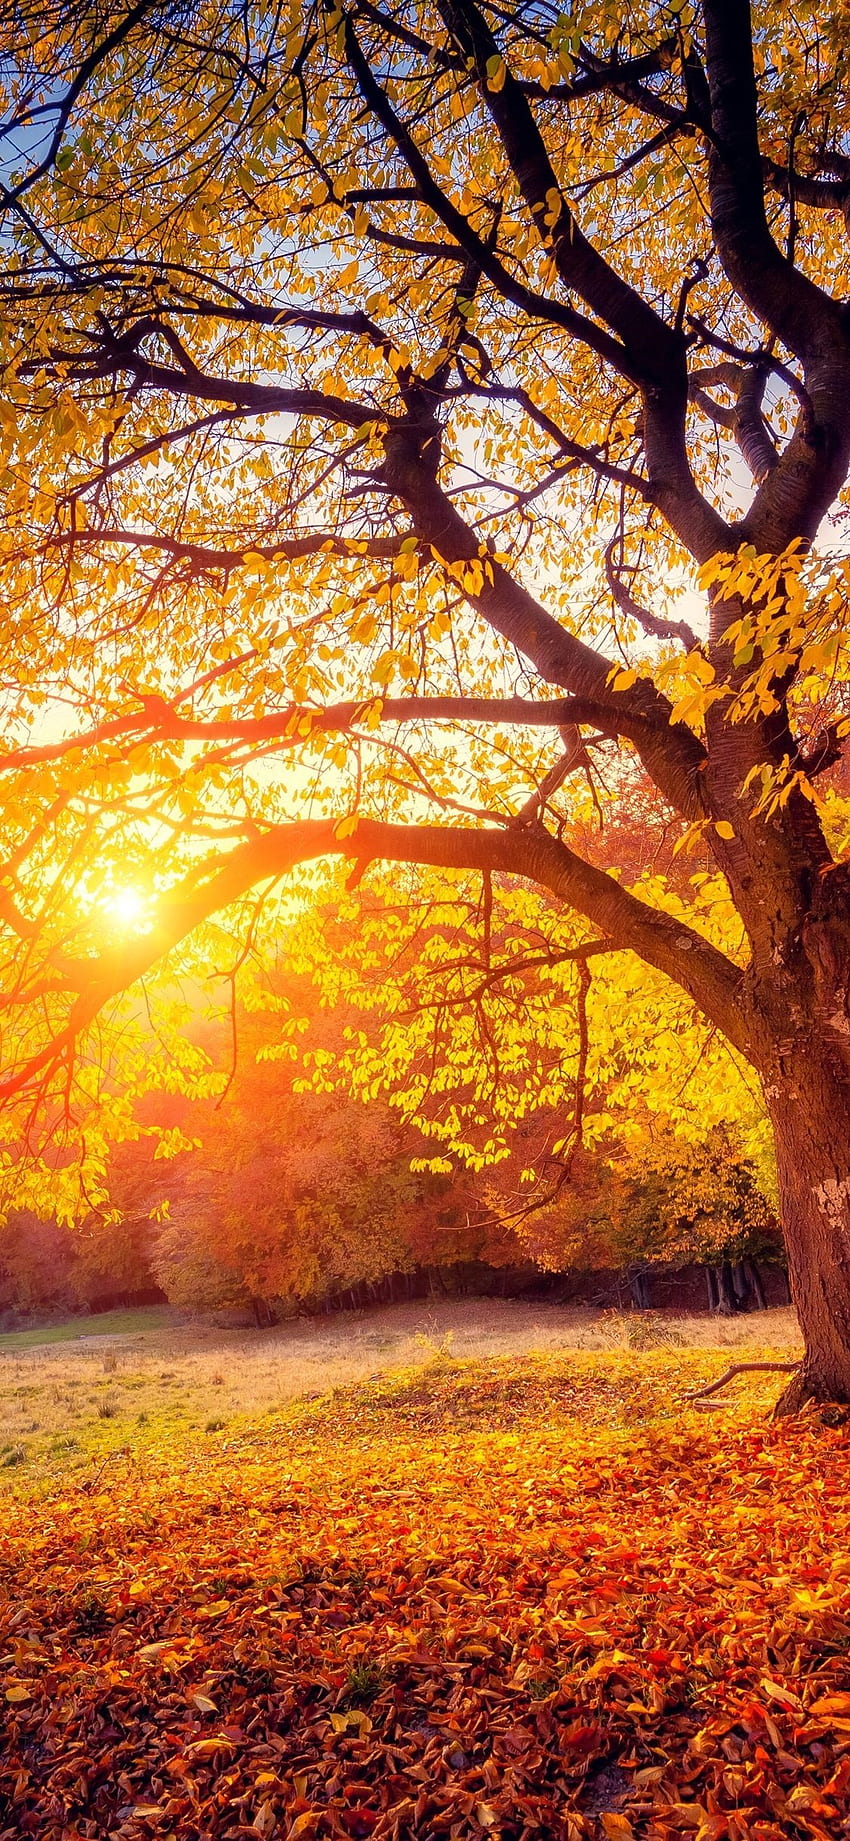 IPhone Tree, Sunset, Sunshine .teahub.io, Autumn Trees HD phone ...